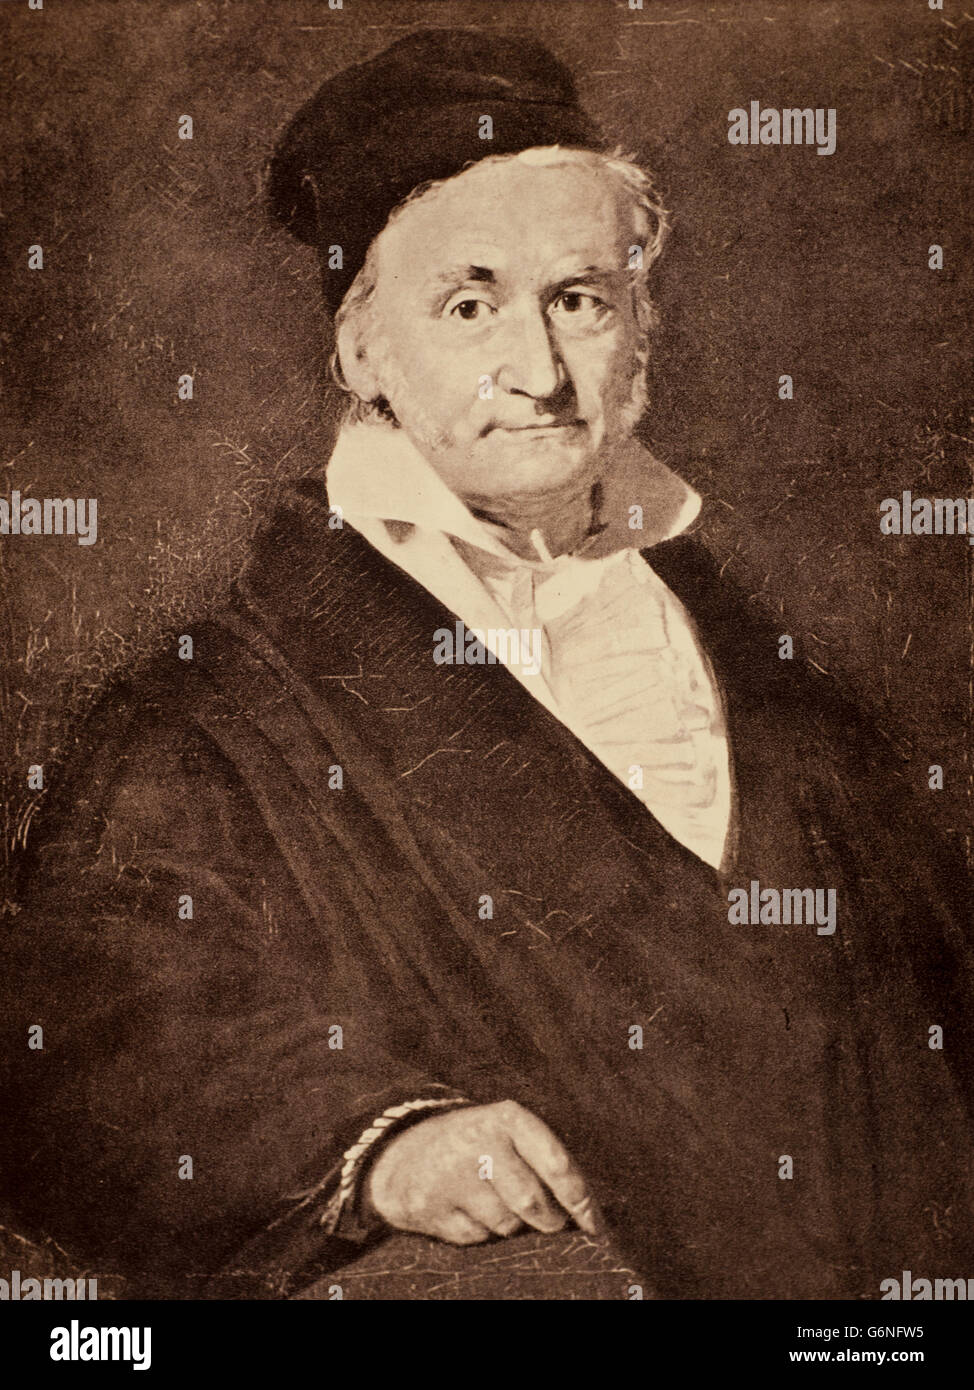 Johann Carl Friedrich Gauss (Braunschweig, April 30, 1777 - Göttingen, February 23, 1855) It was a mathematician, German astronomer and physicist, Stock Photo